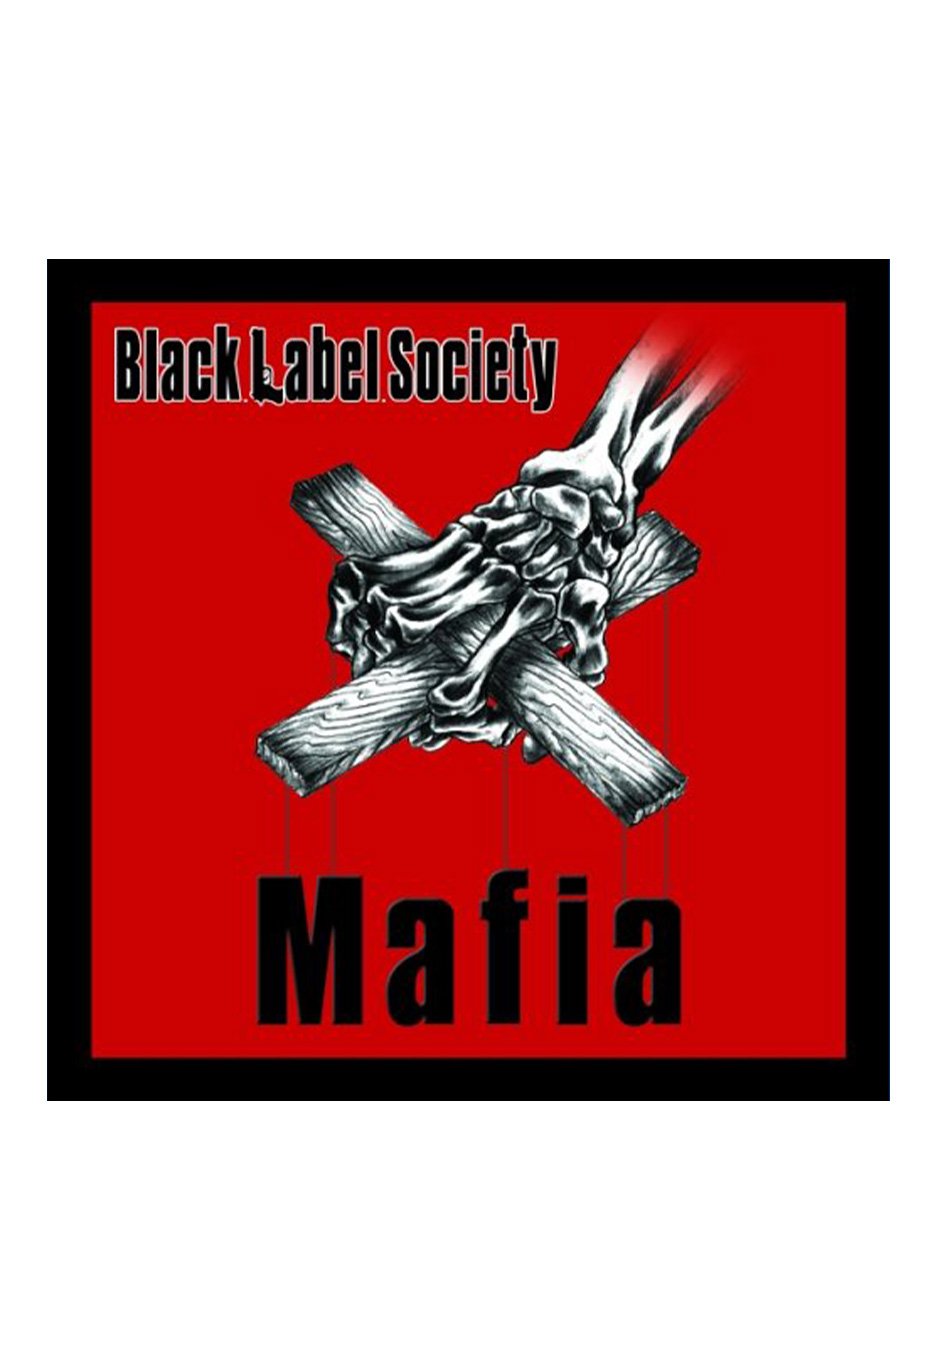 Black Label Society - Mafia - 2 Vinyl